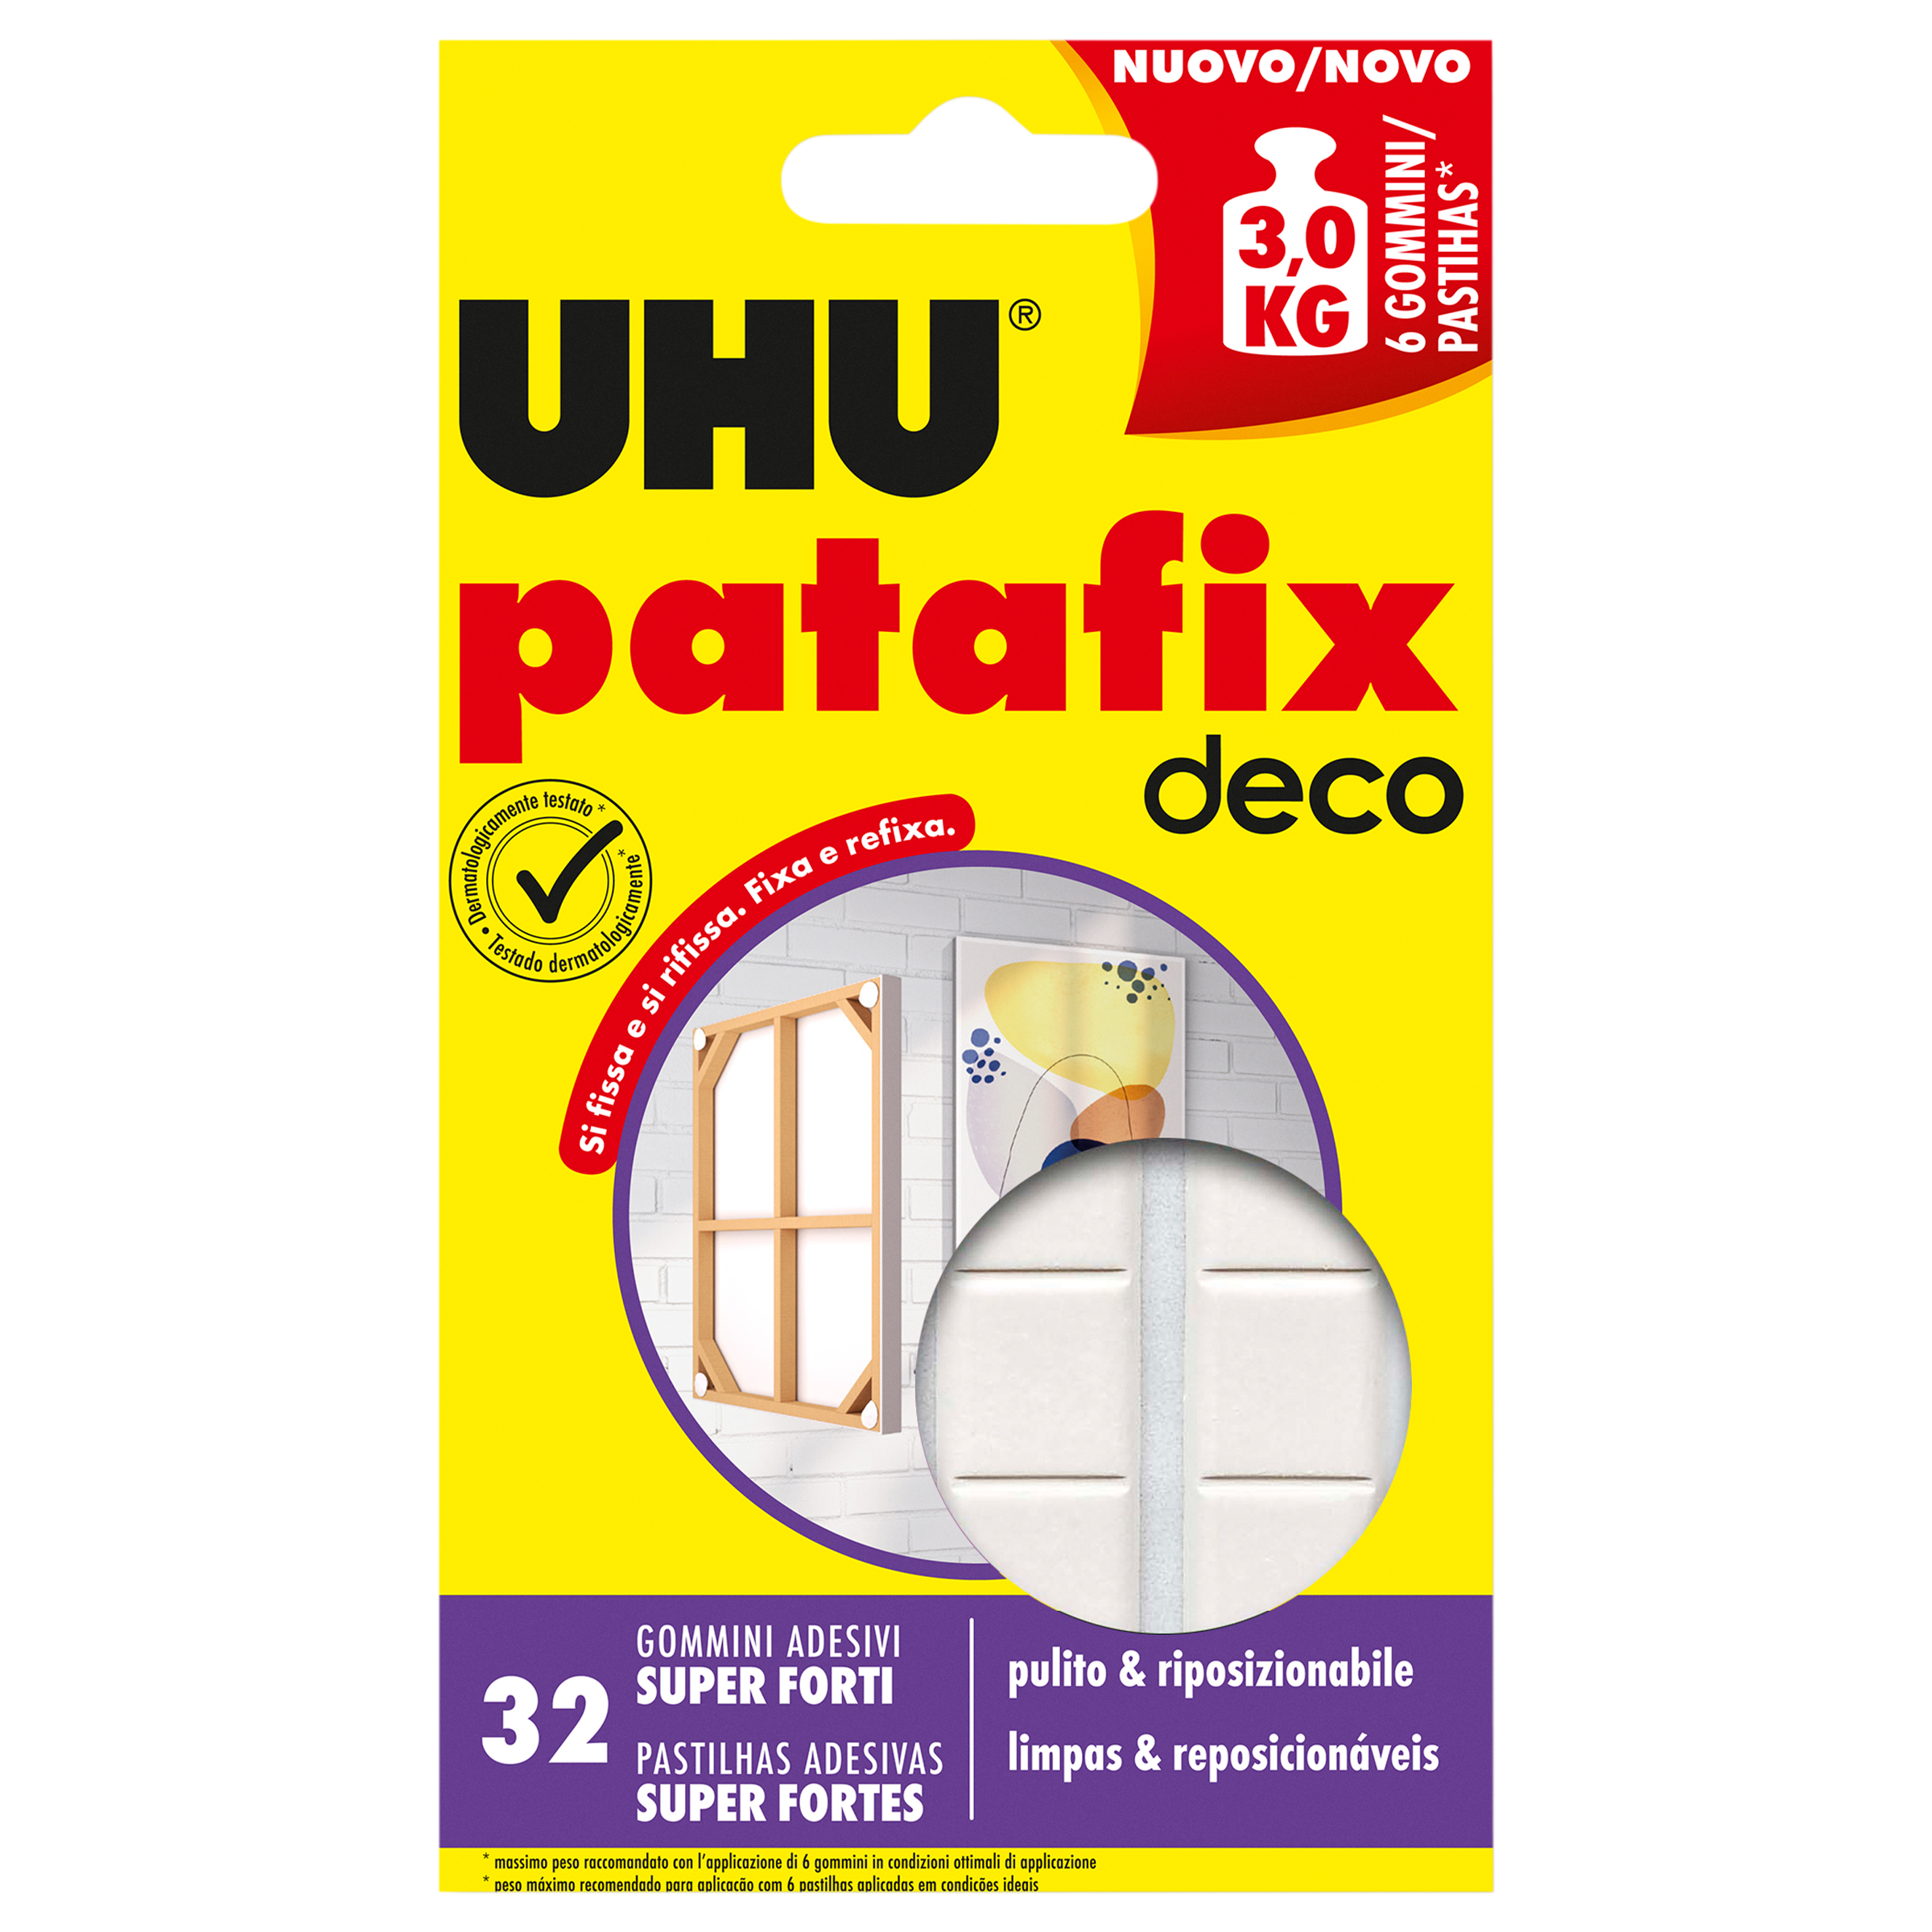 Patafix - UHU incolla tutto, su tutto